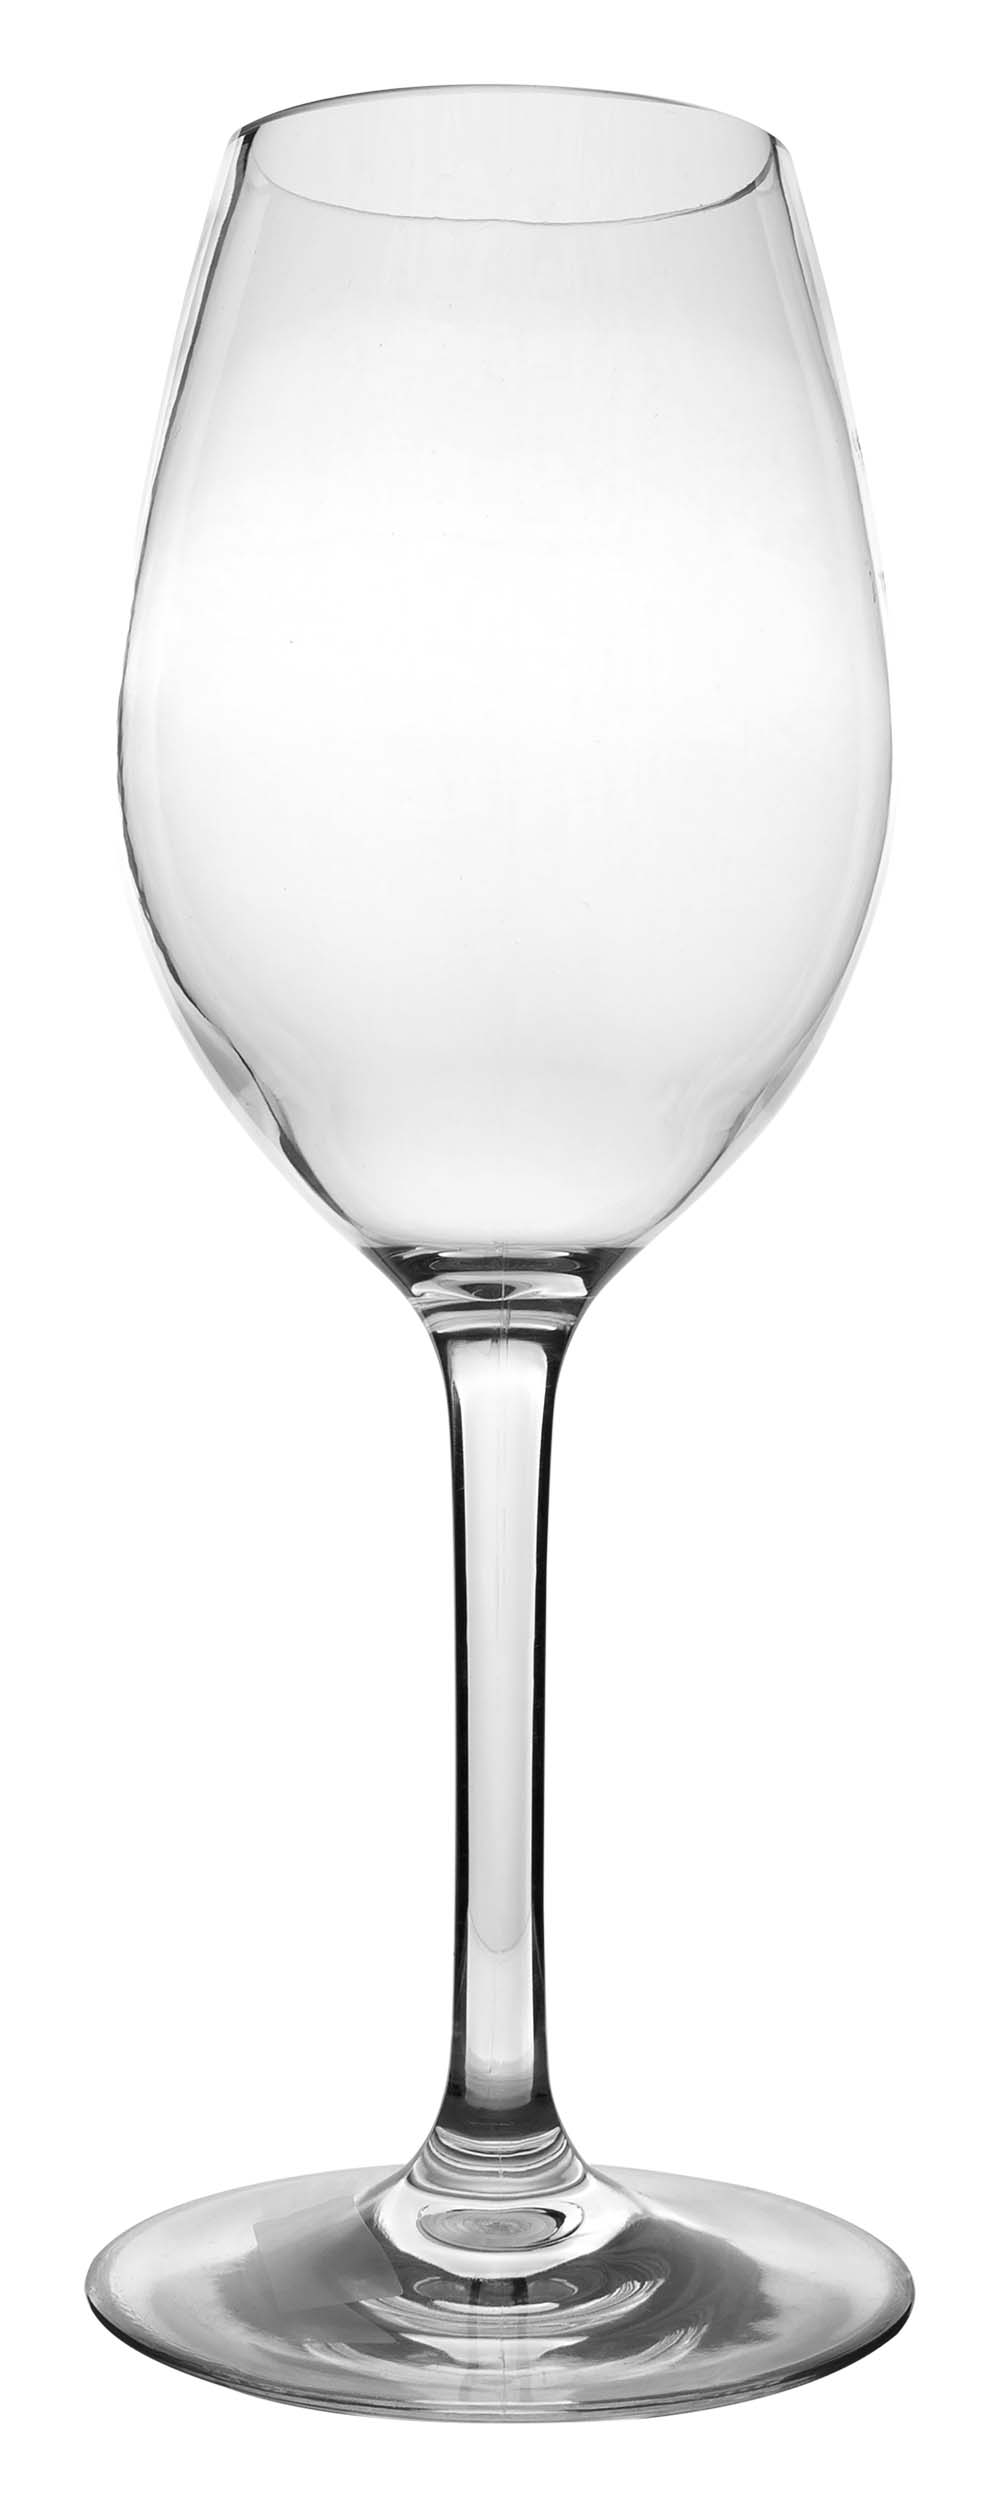 6101461 Una copa de vino blanco de lujo casi irrompible con un diseño redondo y elegante. Apto para lavavajillas, ligero y aún mejor resistente a los arañazos. Fabricado en tritán resistente. Un juego de 2 vasos. Los vasos no contienen BPA.